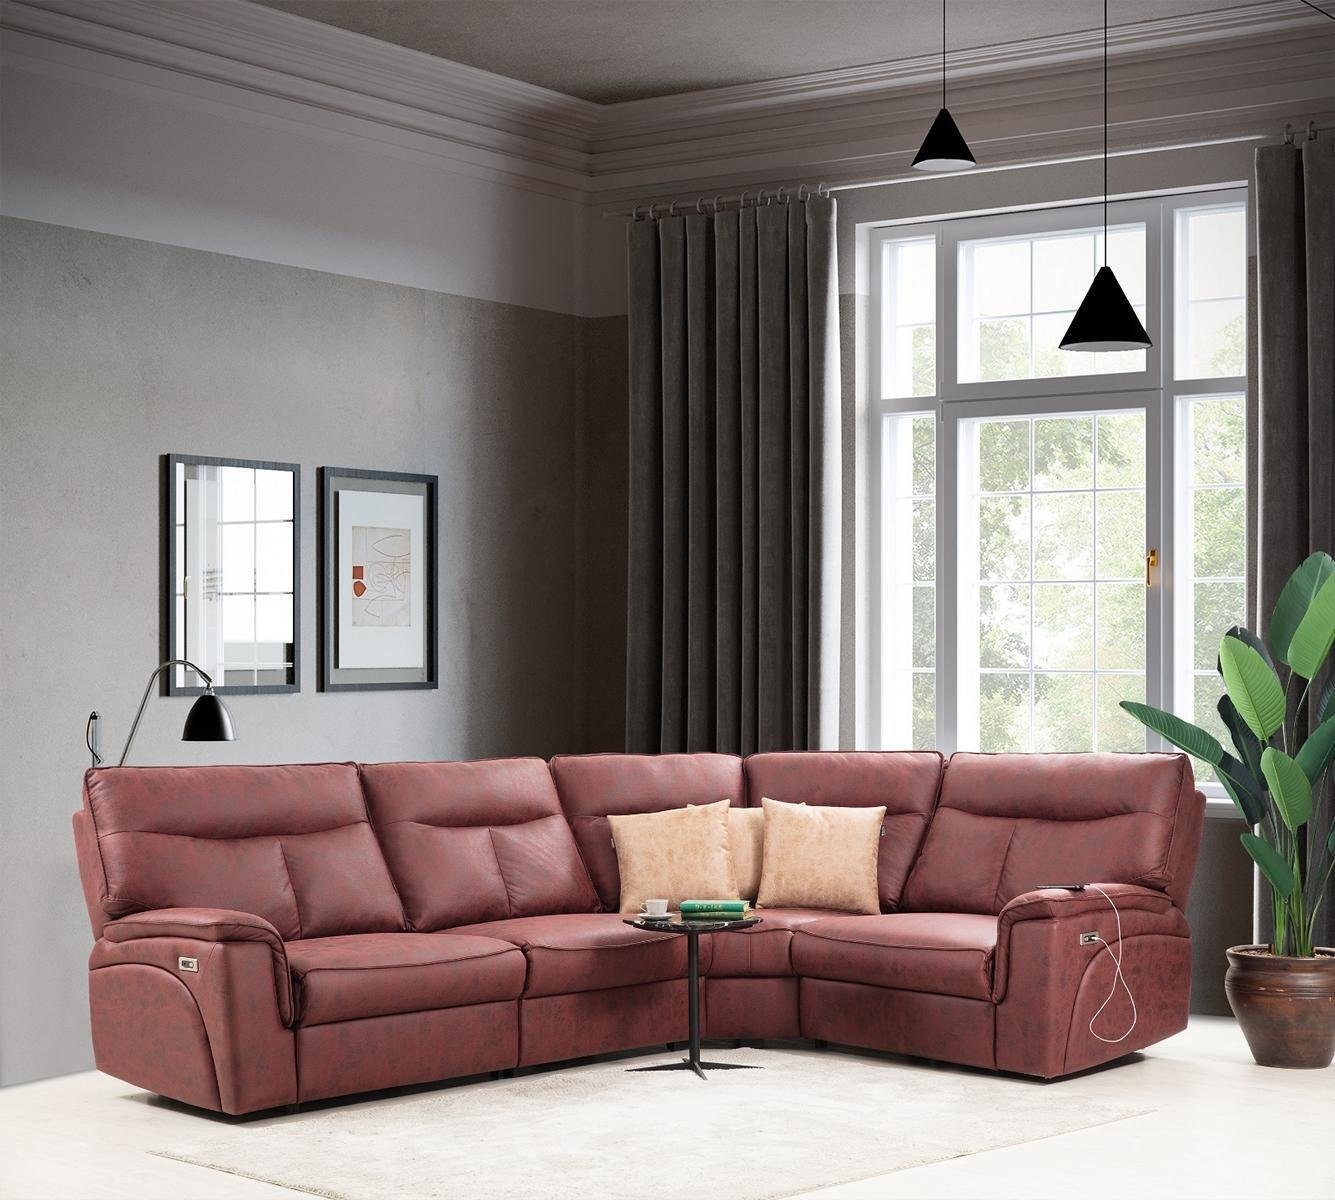 Super willkommen diesen Monat JVmoebel Ecksofa Luxus Ecksofa Rot Teile, Polstermöbel, in 4 L-Form Couch Modern Made Europa Sofa